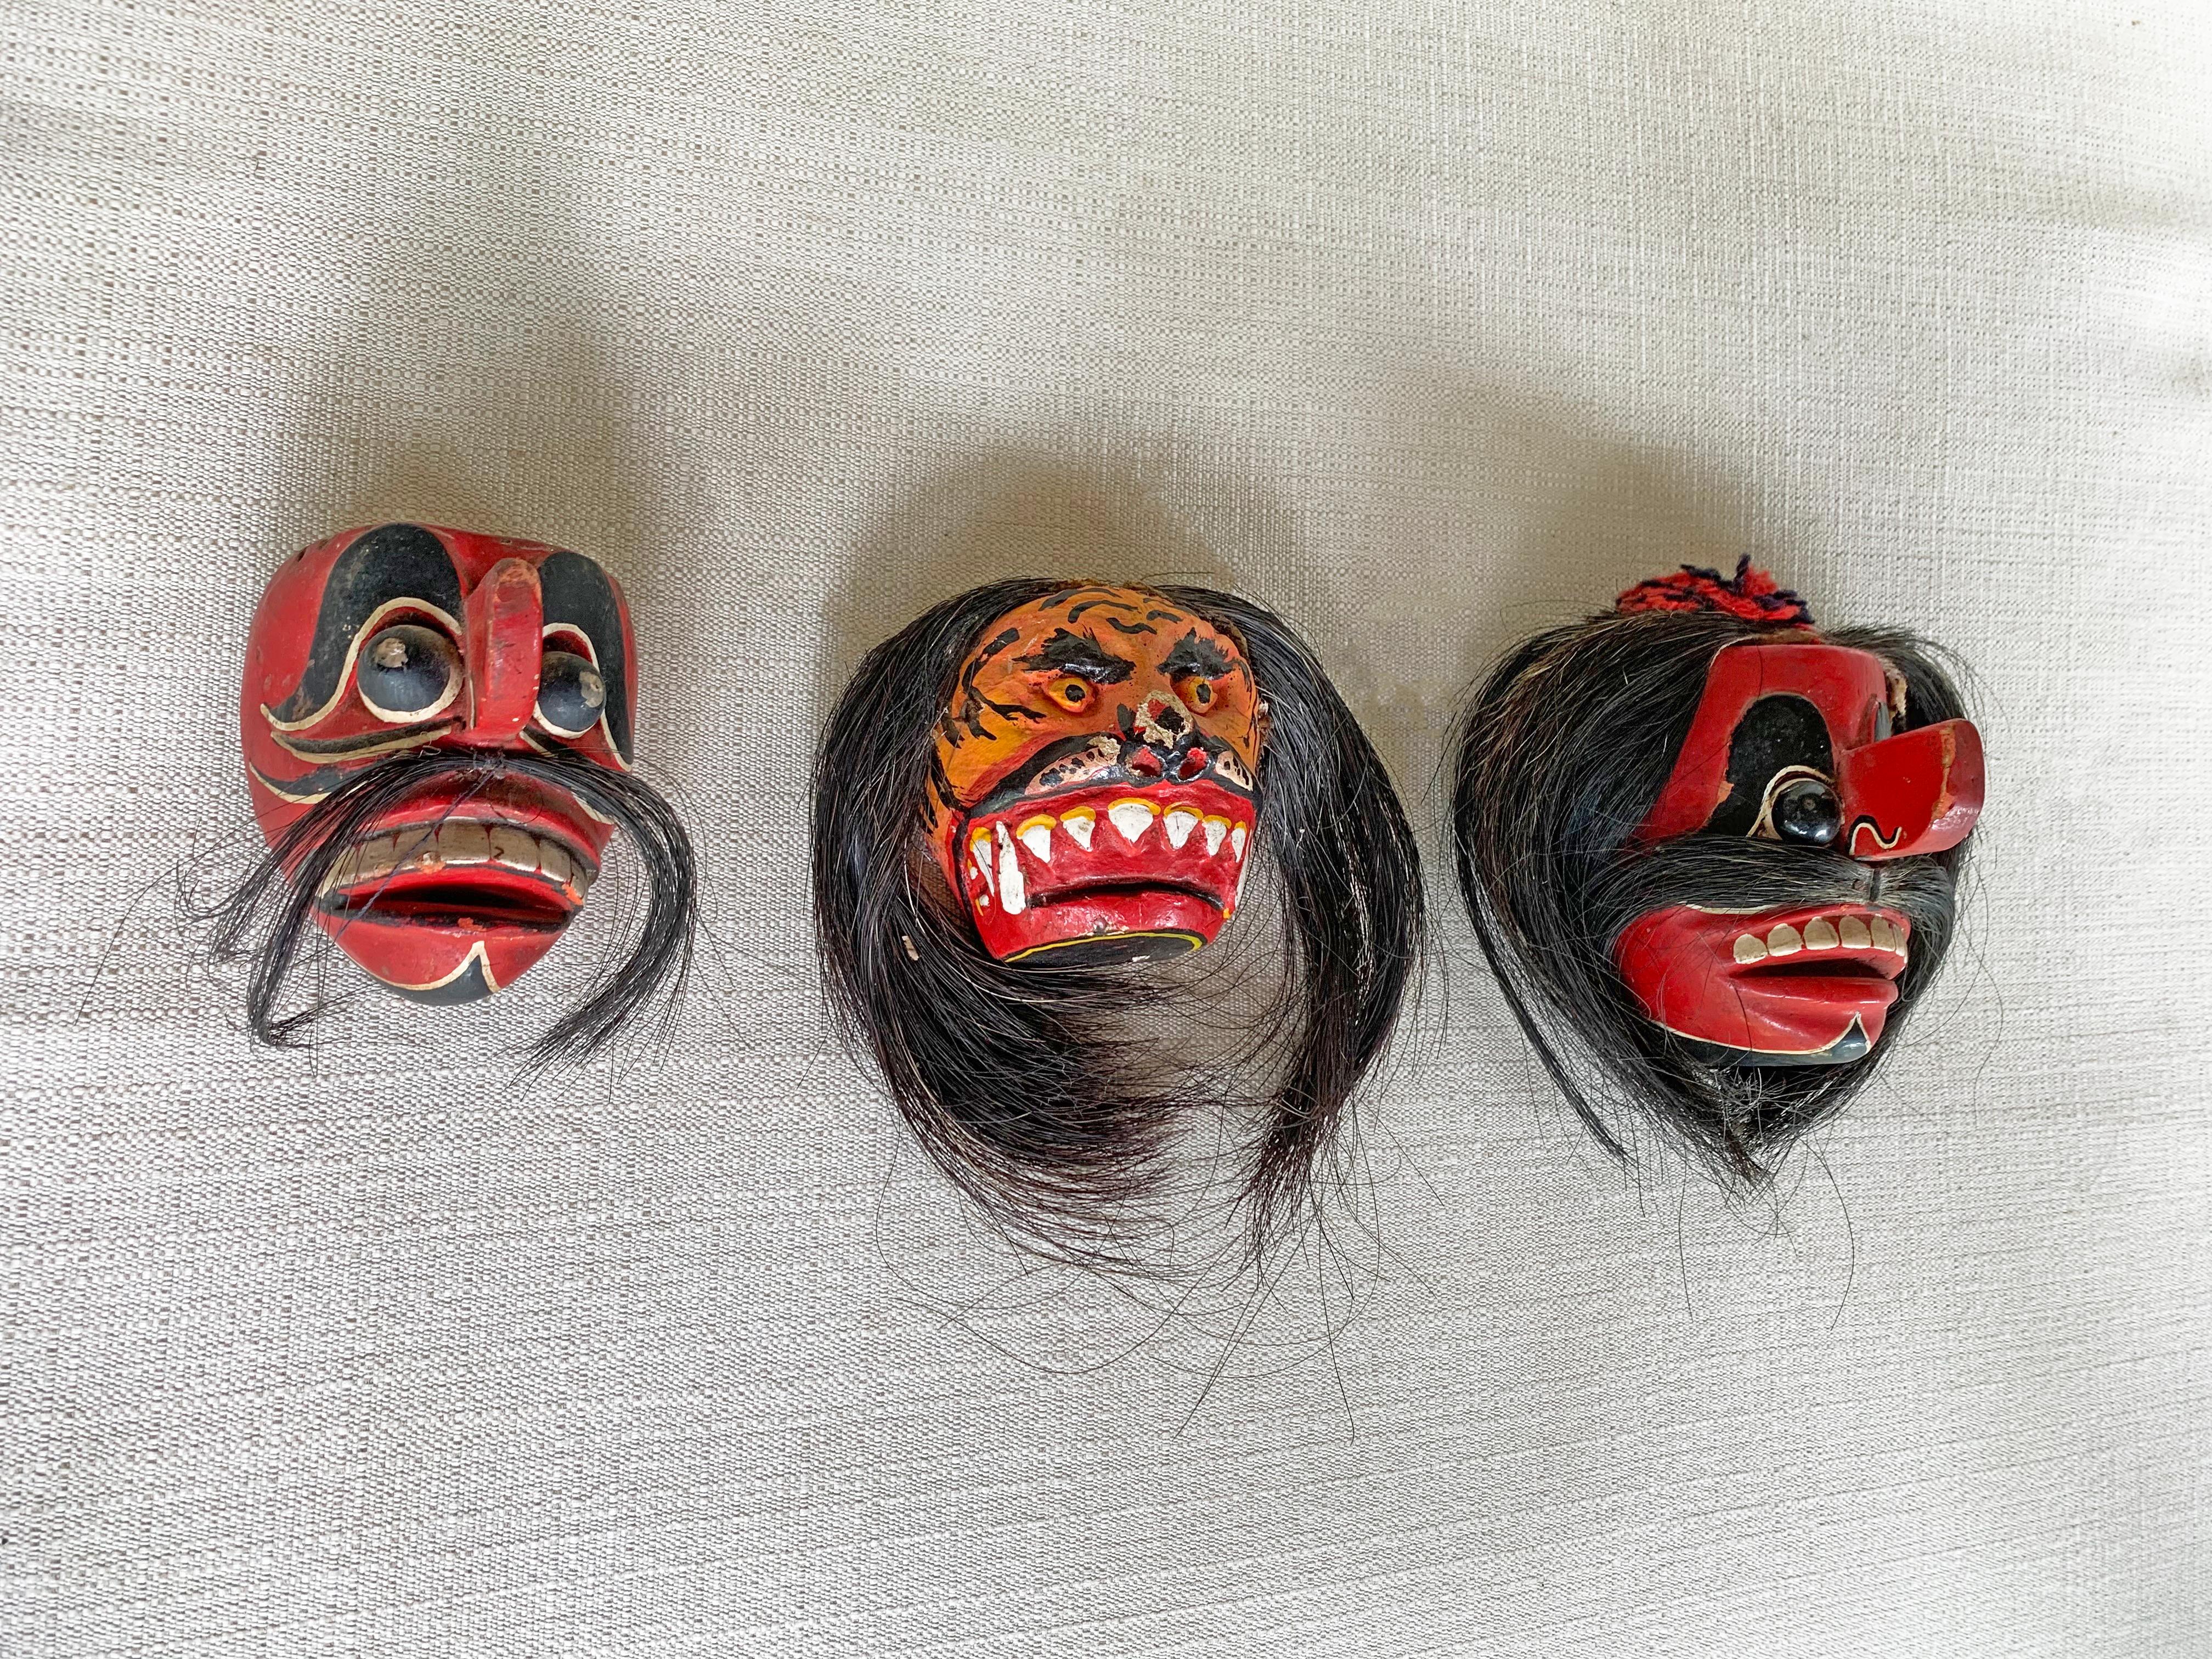 Cet ensemble de trois masques datant du milieu du XXe siècle a été utilisé sur l'île de Madura à des fins cérémonielles. L'île de Madura est située au large de la côte nord-est de Java. Ce masque présente un mélange de polychromie rouge, blanche et